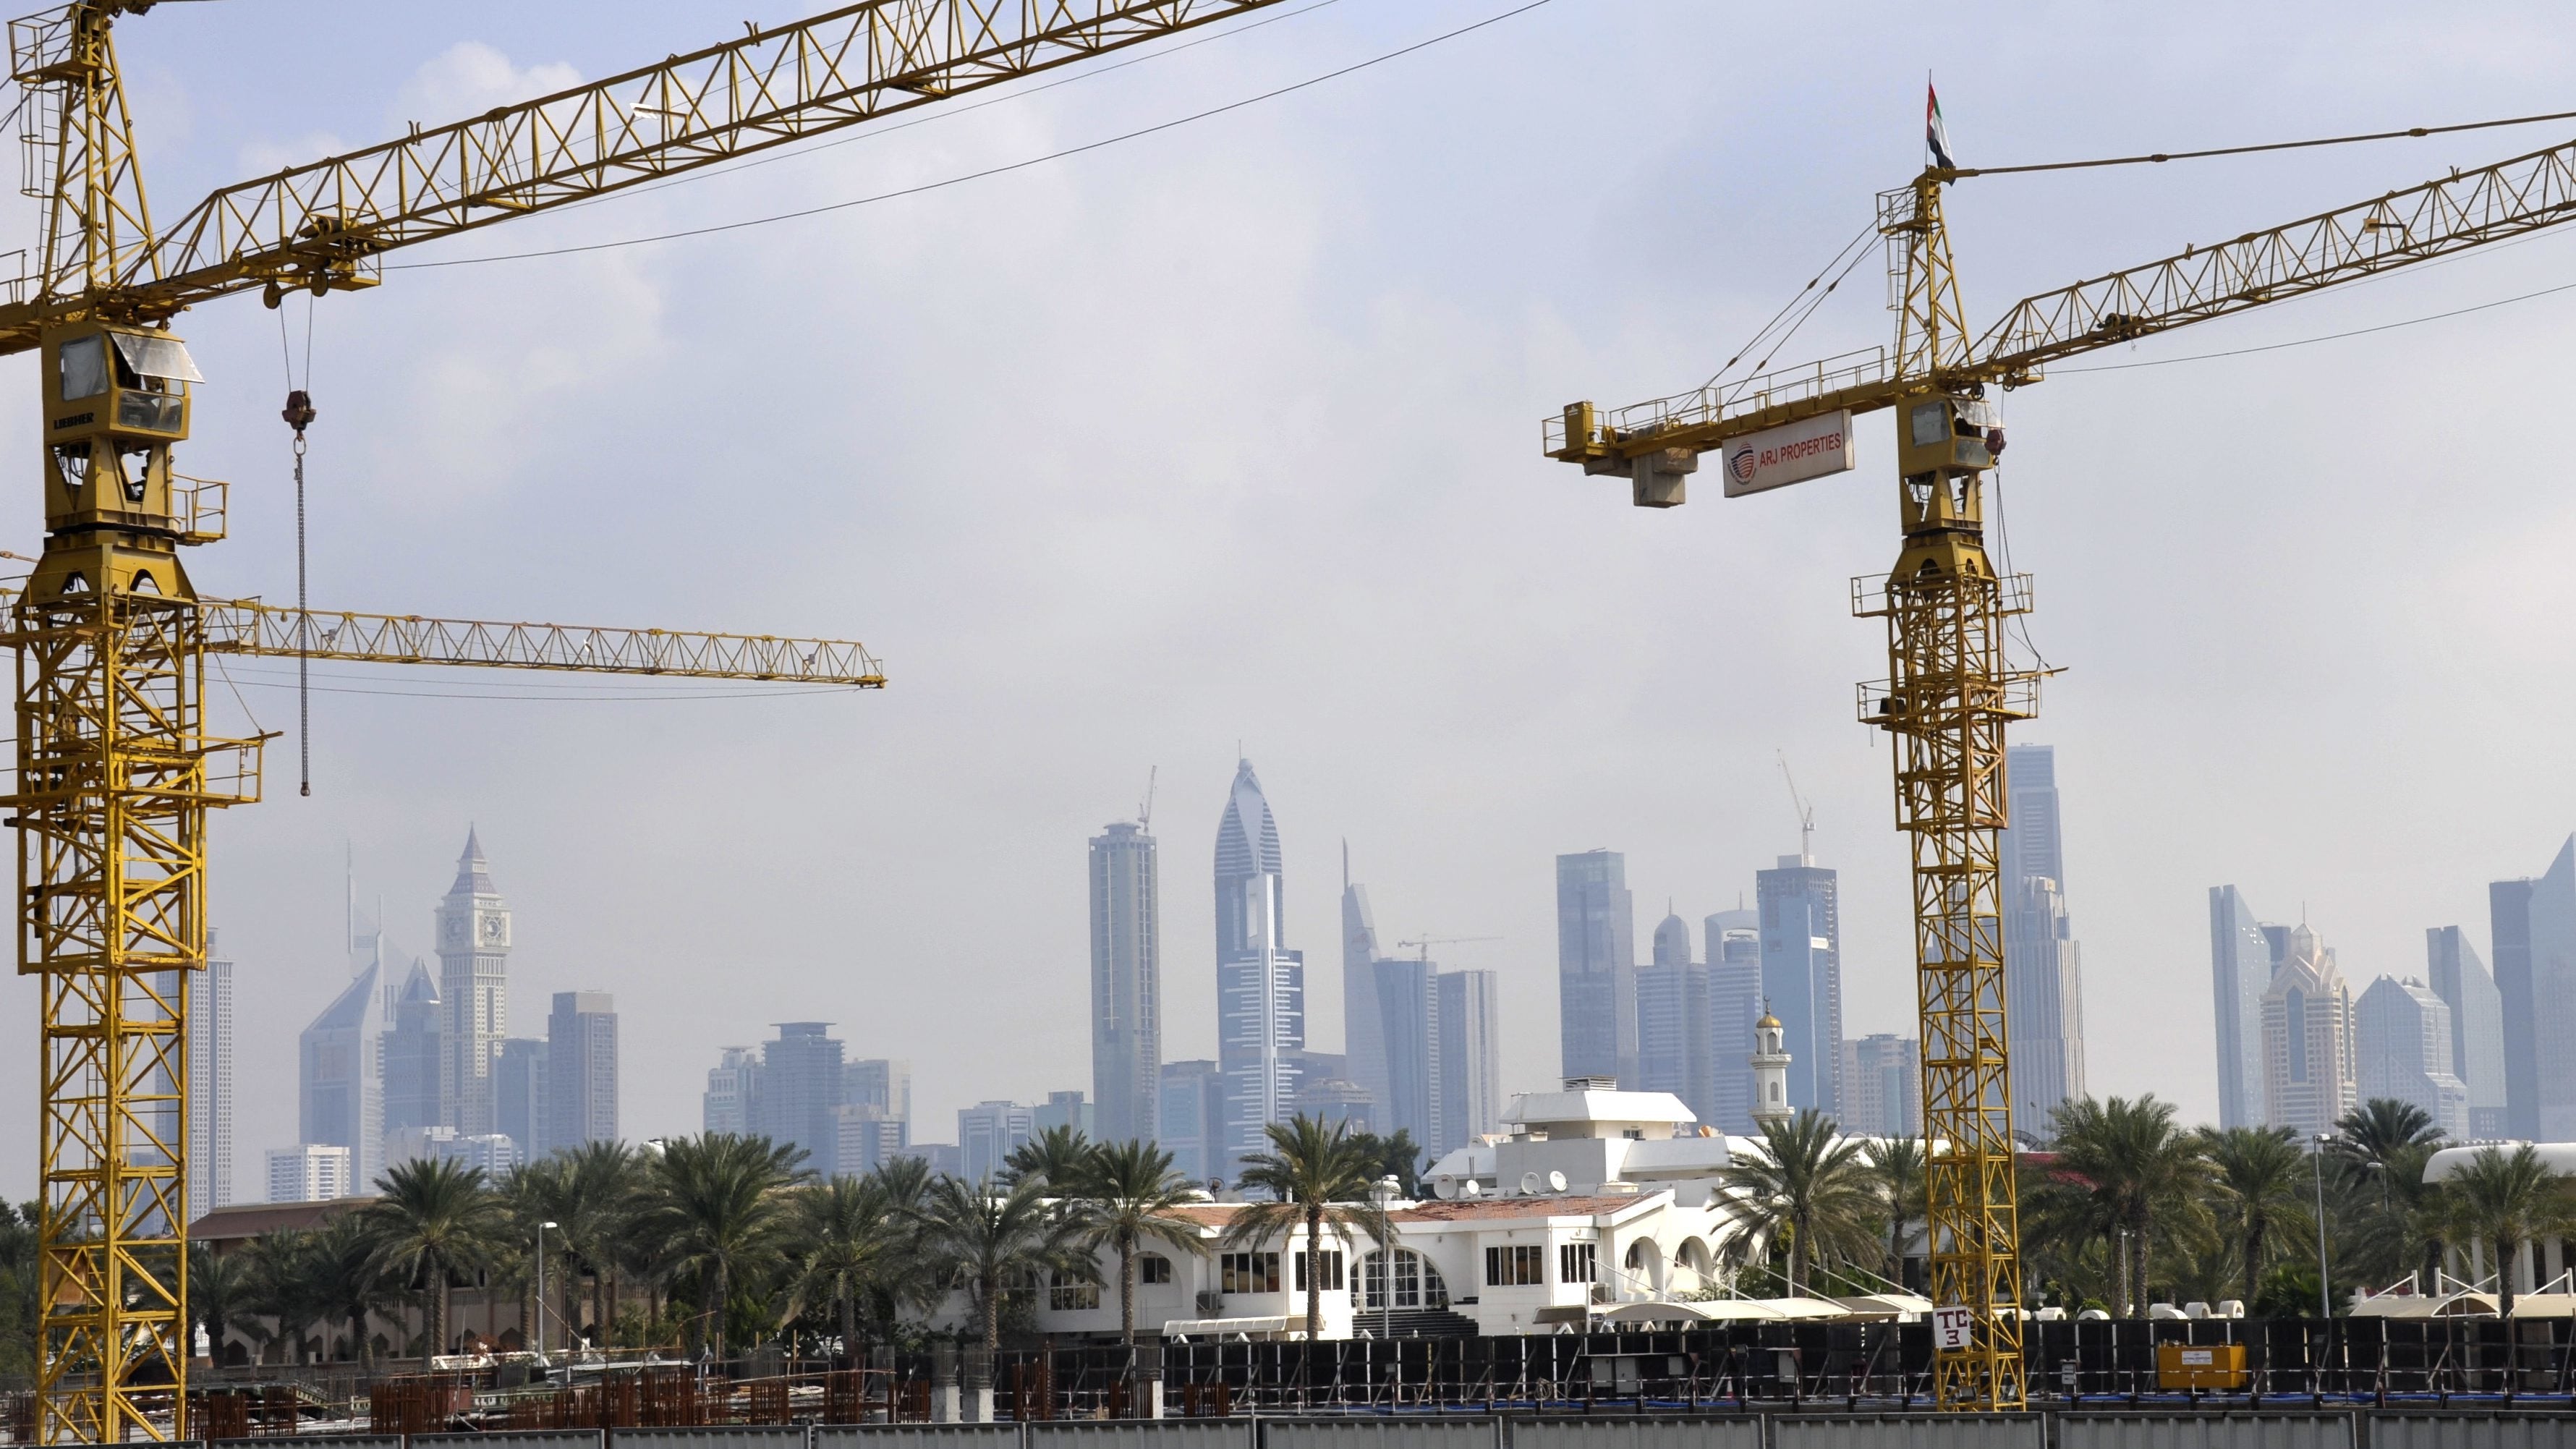 Cranes in front of the skyscraper skyline of Dubai